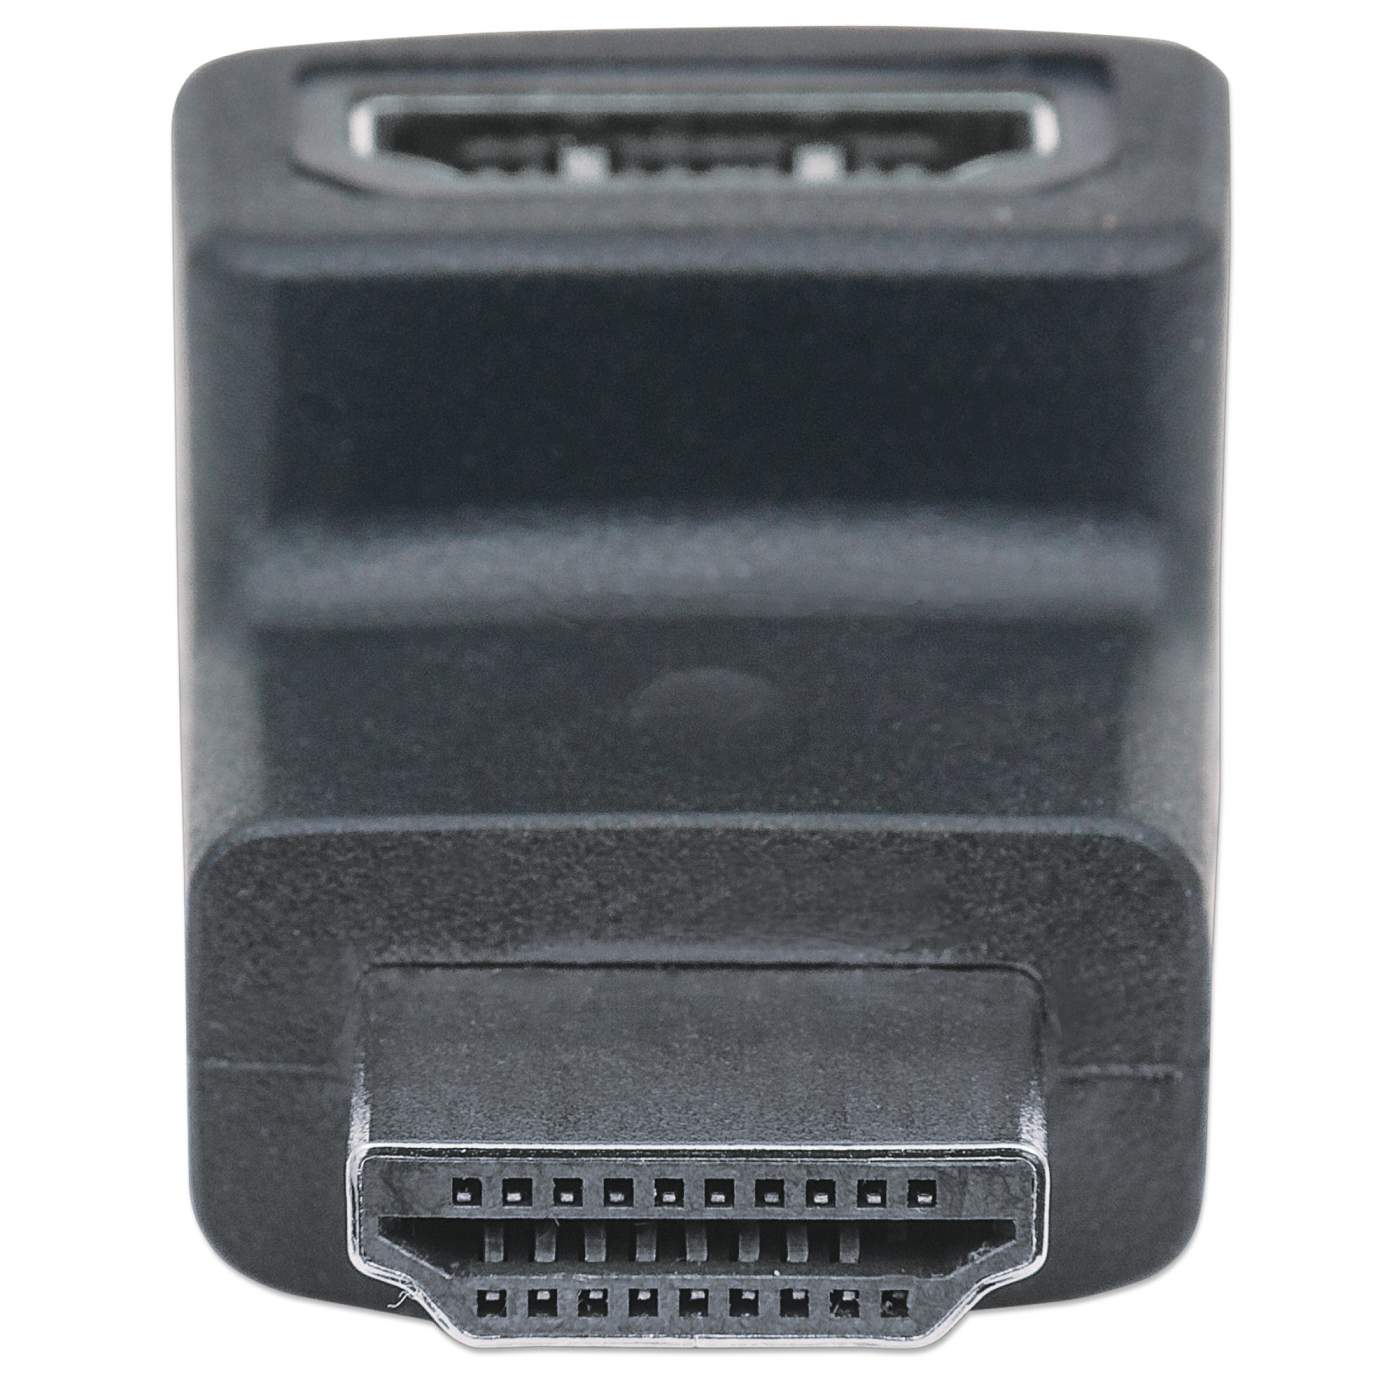 Cable HDMI – HDMI5020 – Brasforma